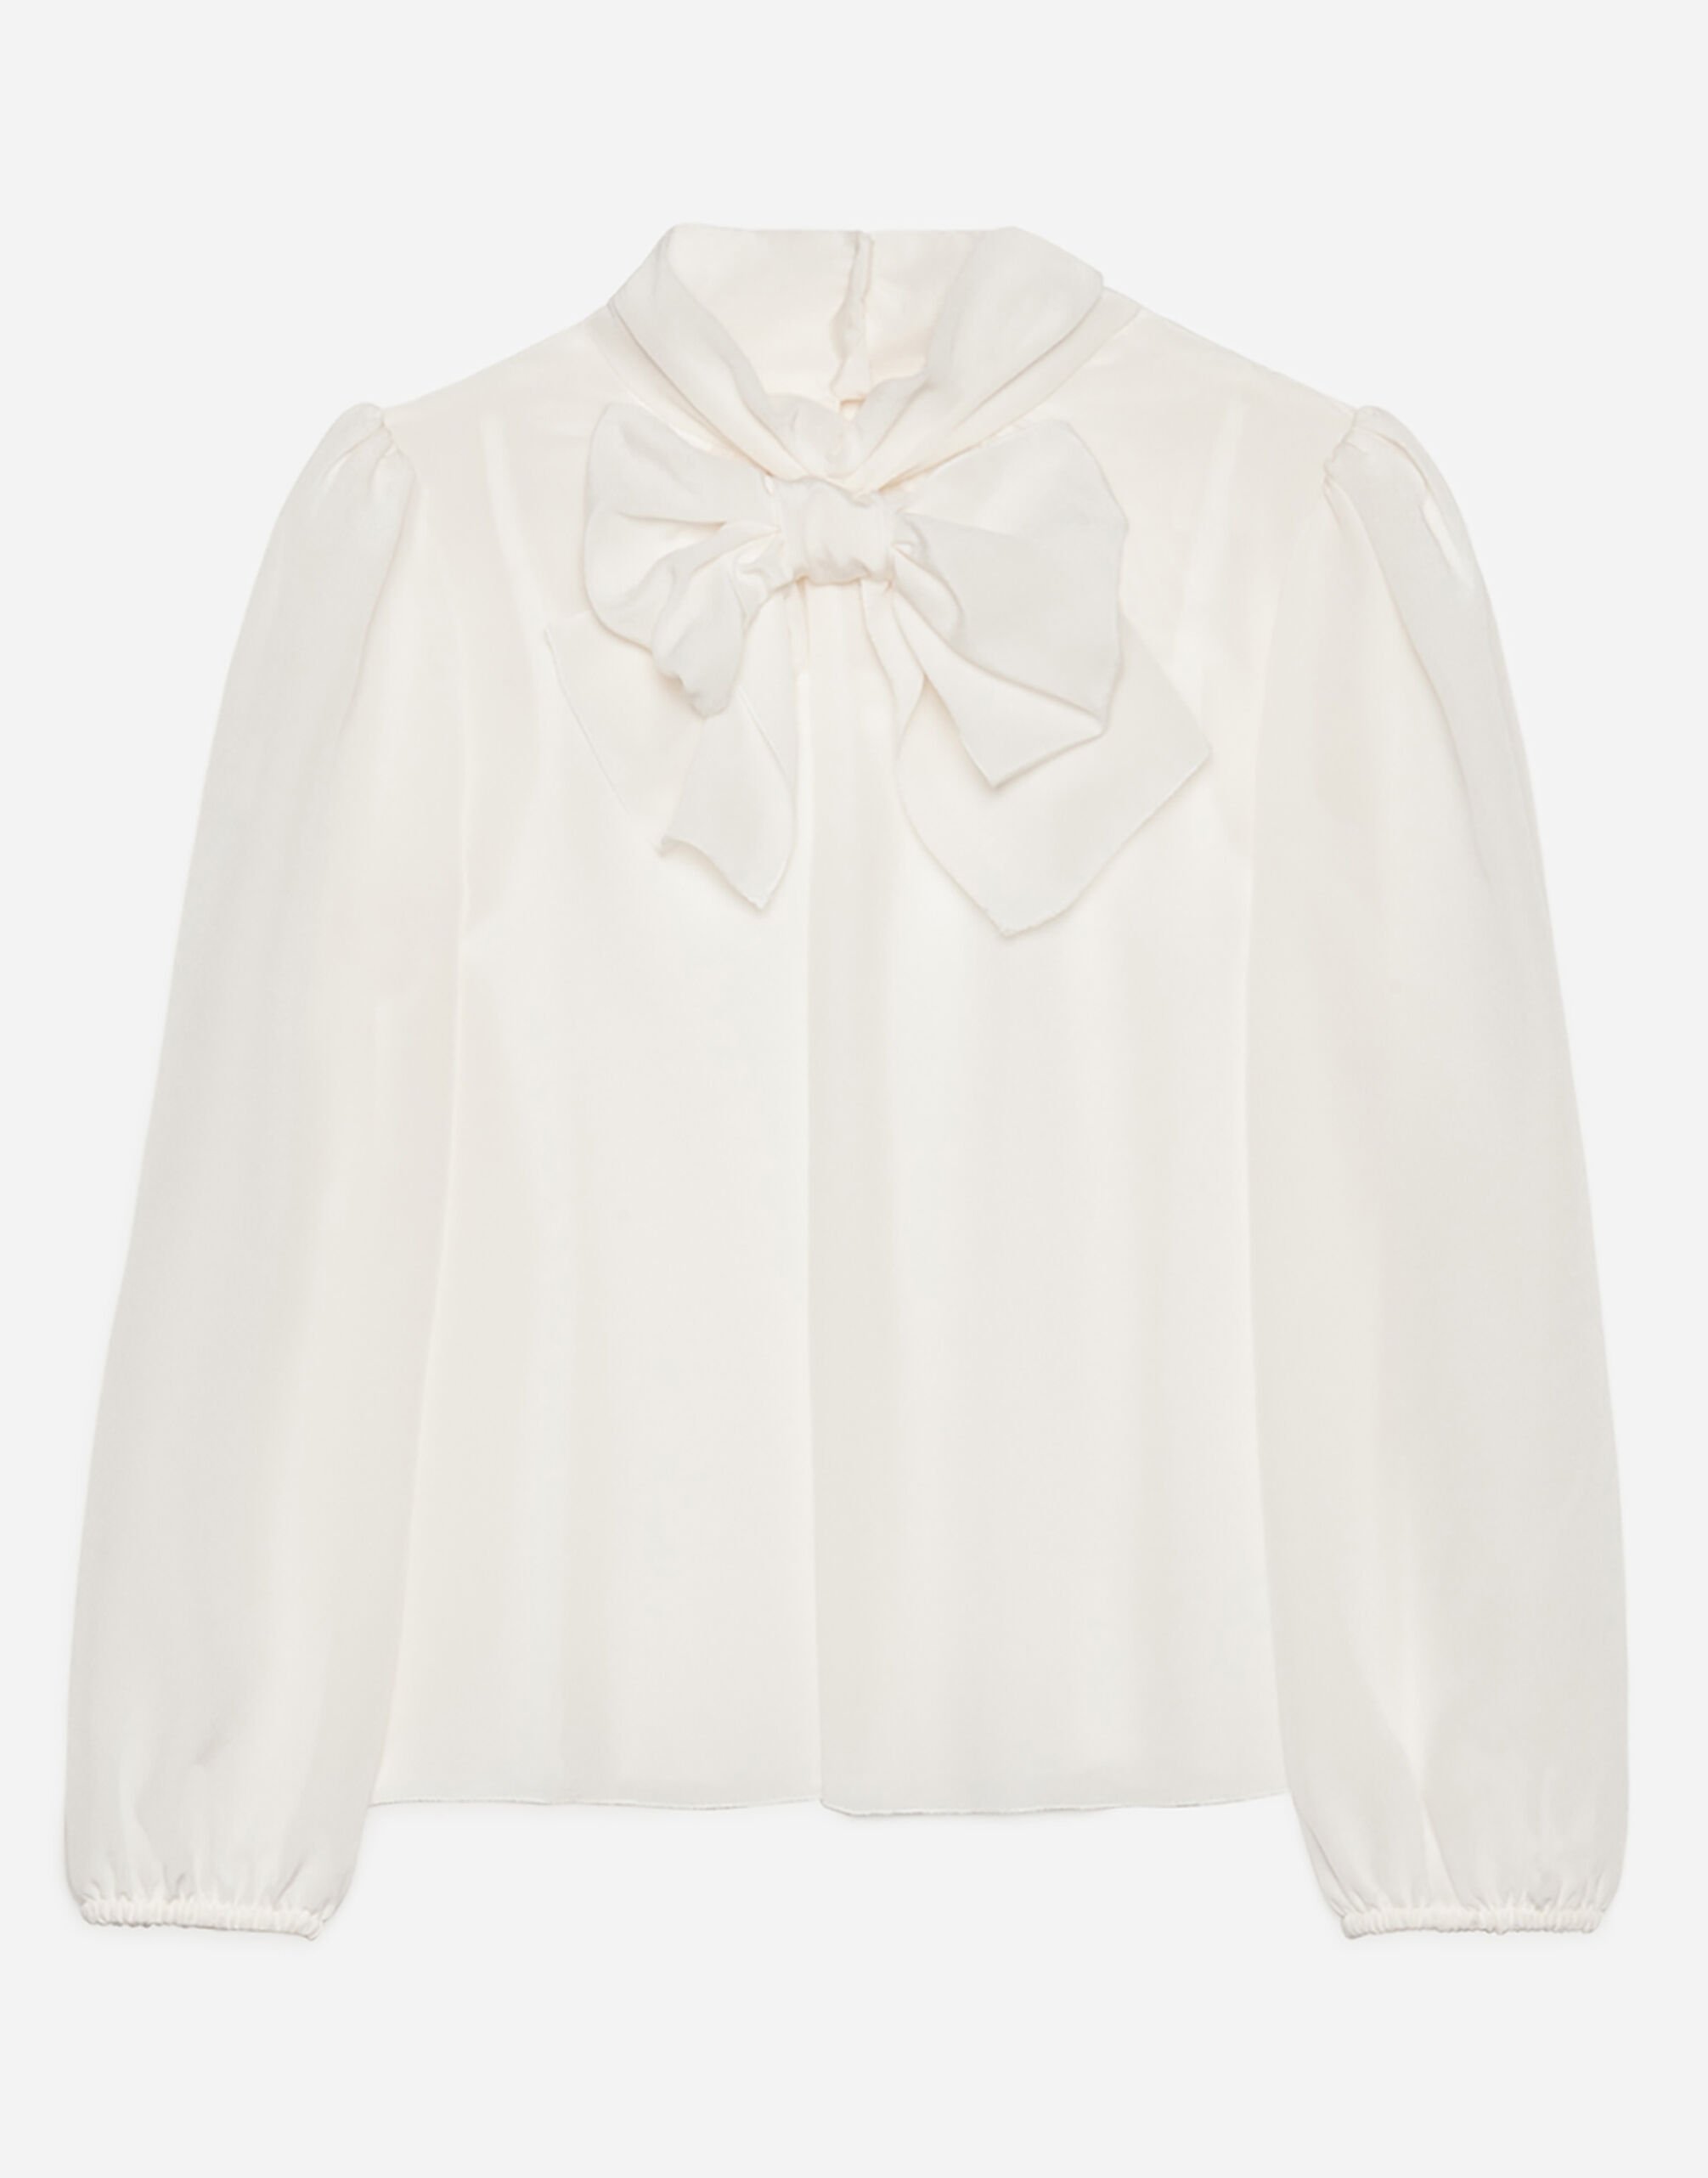 Dolce & Gabbana Crepe de chine blouse Black LB1A58G0U05